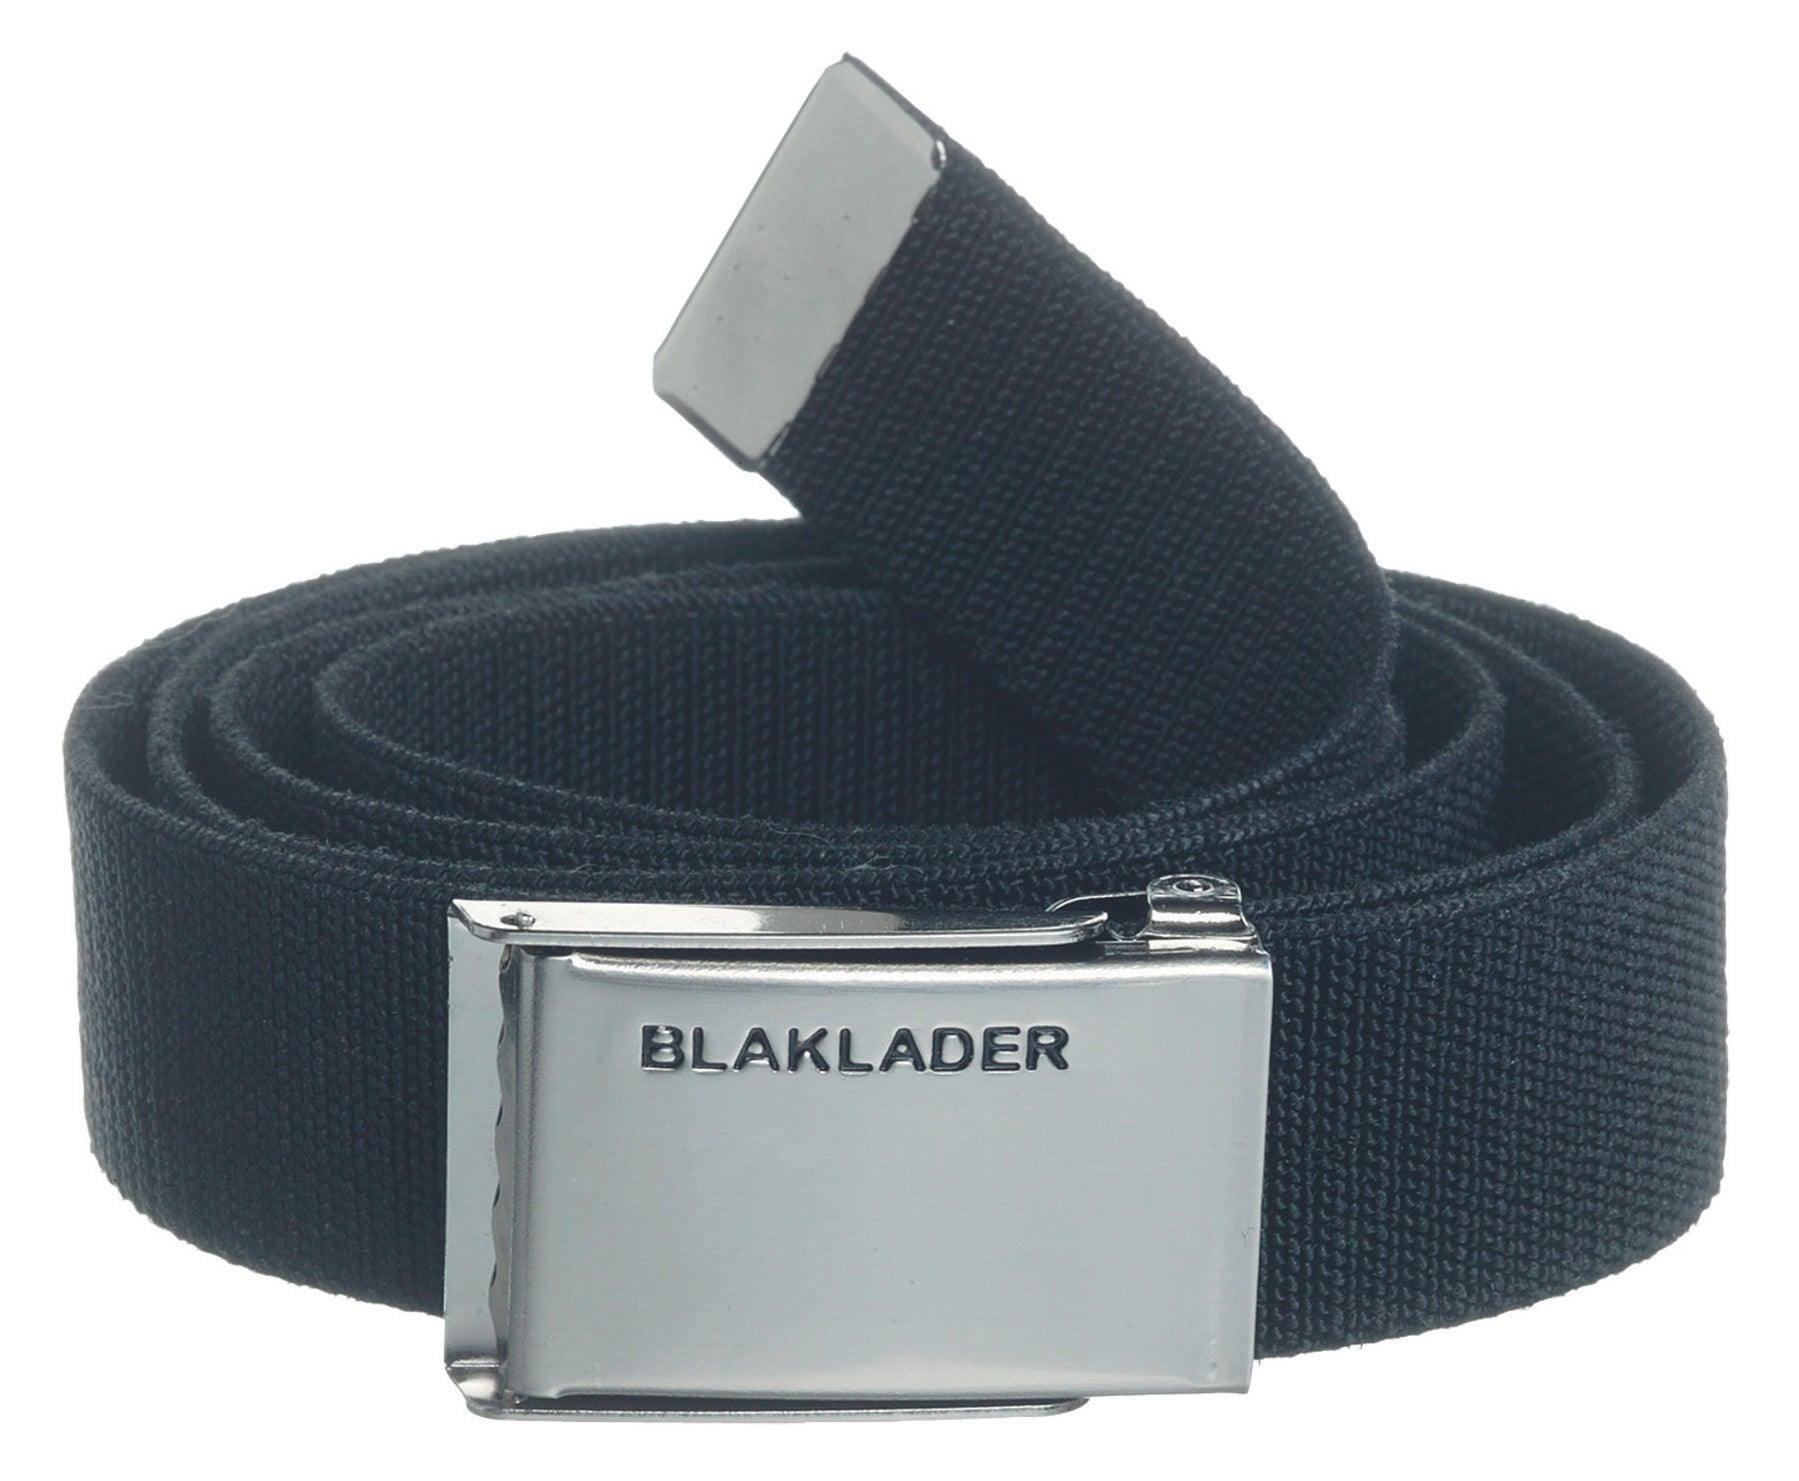 Blaklader 4014 Stretch Web Belt - Black - Trusted Gear Company LLC